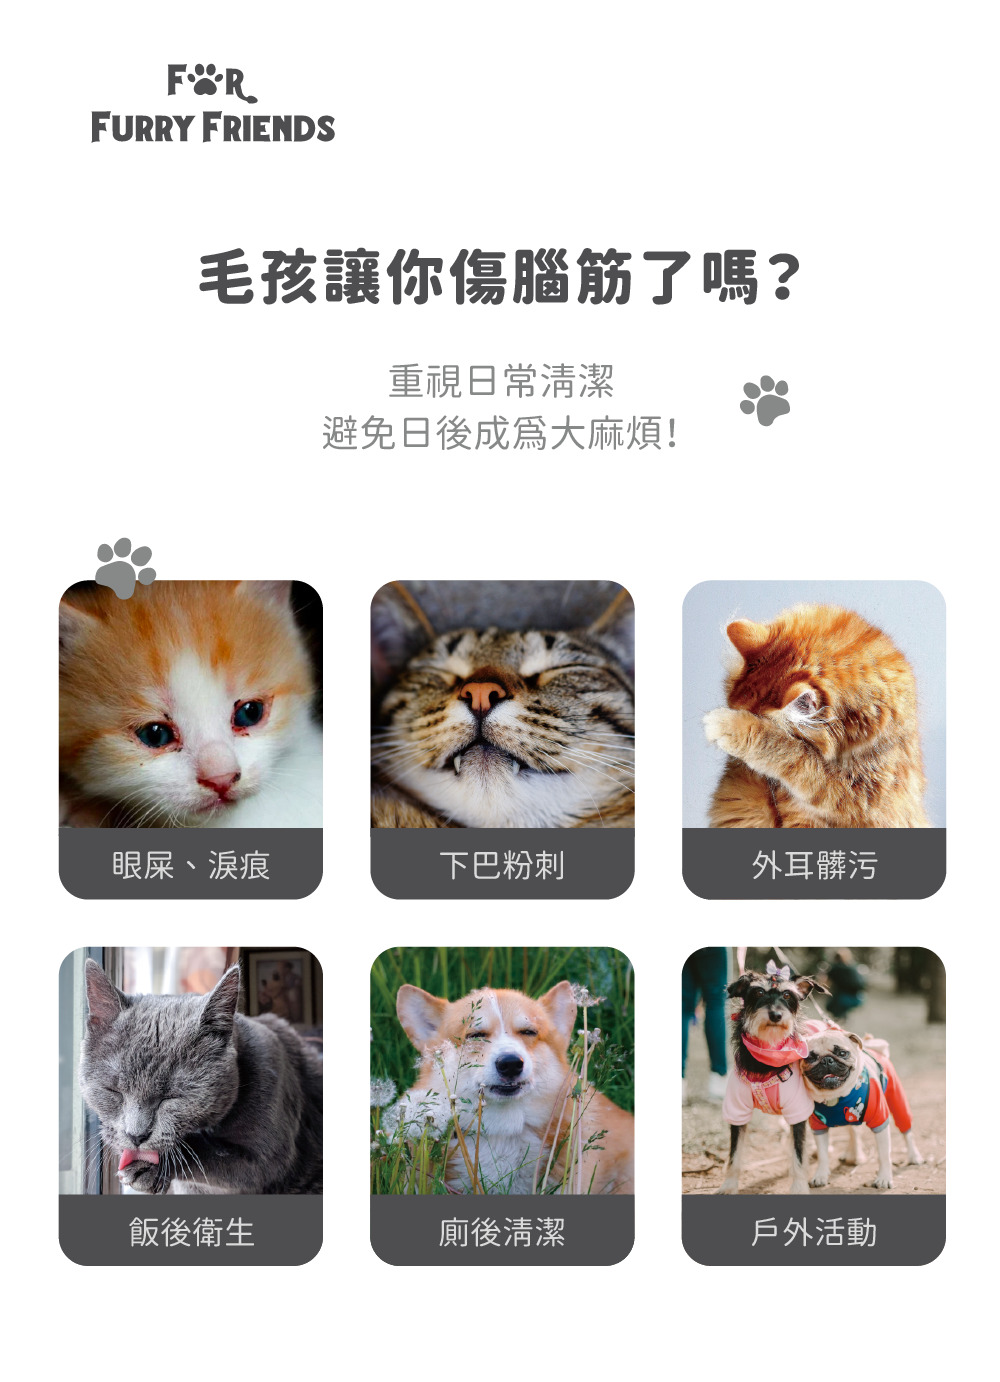 For Furry Friends 電解水寵物抗菌純棉濕巾6